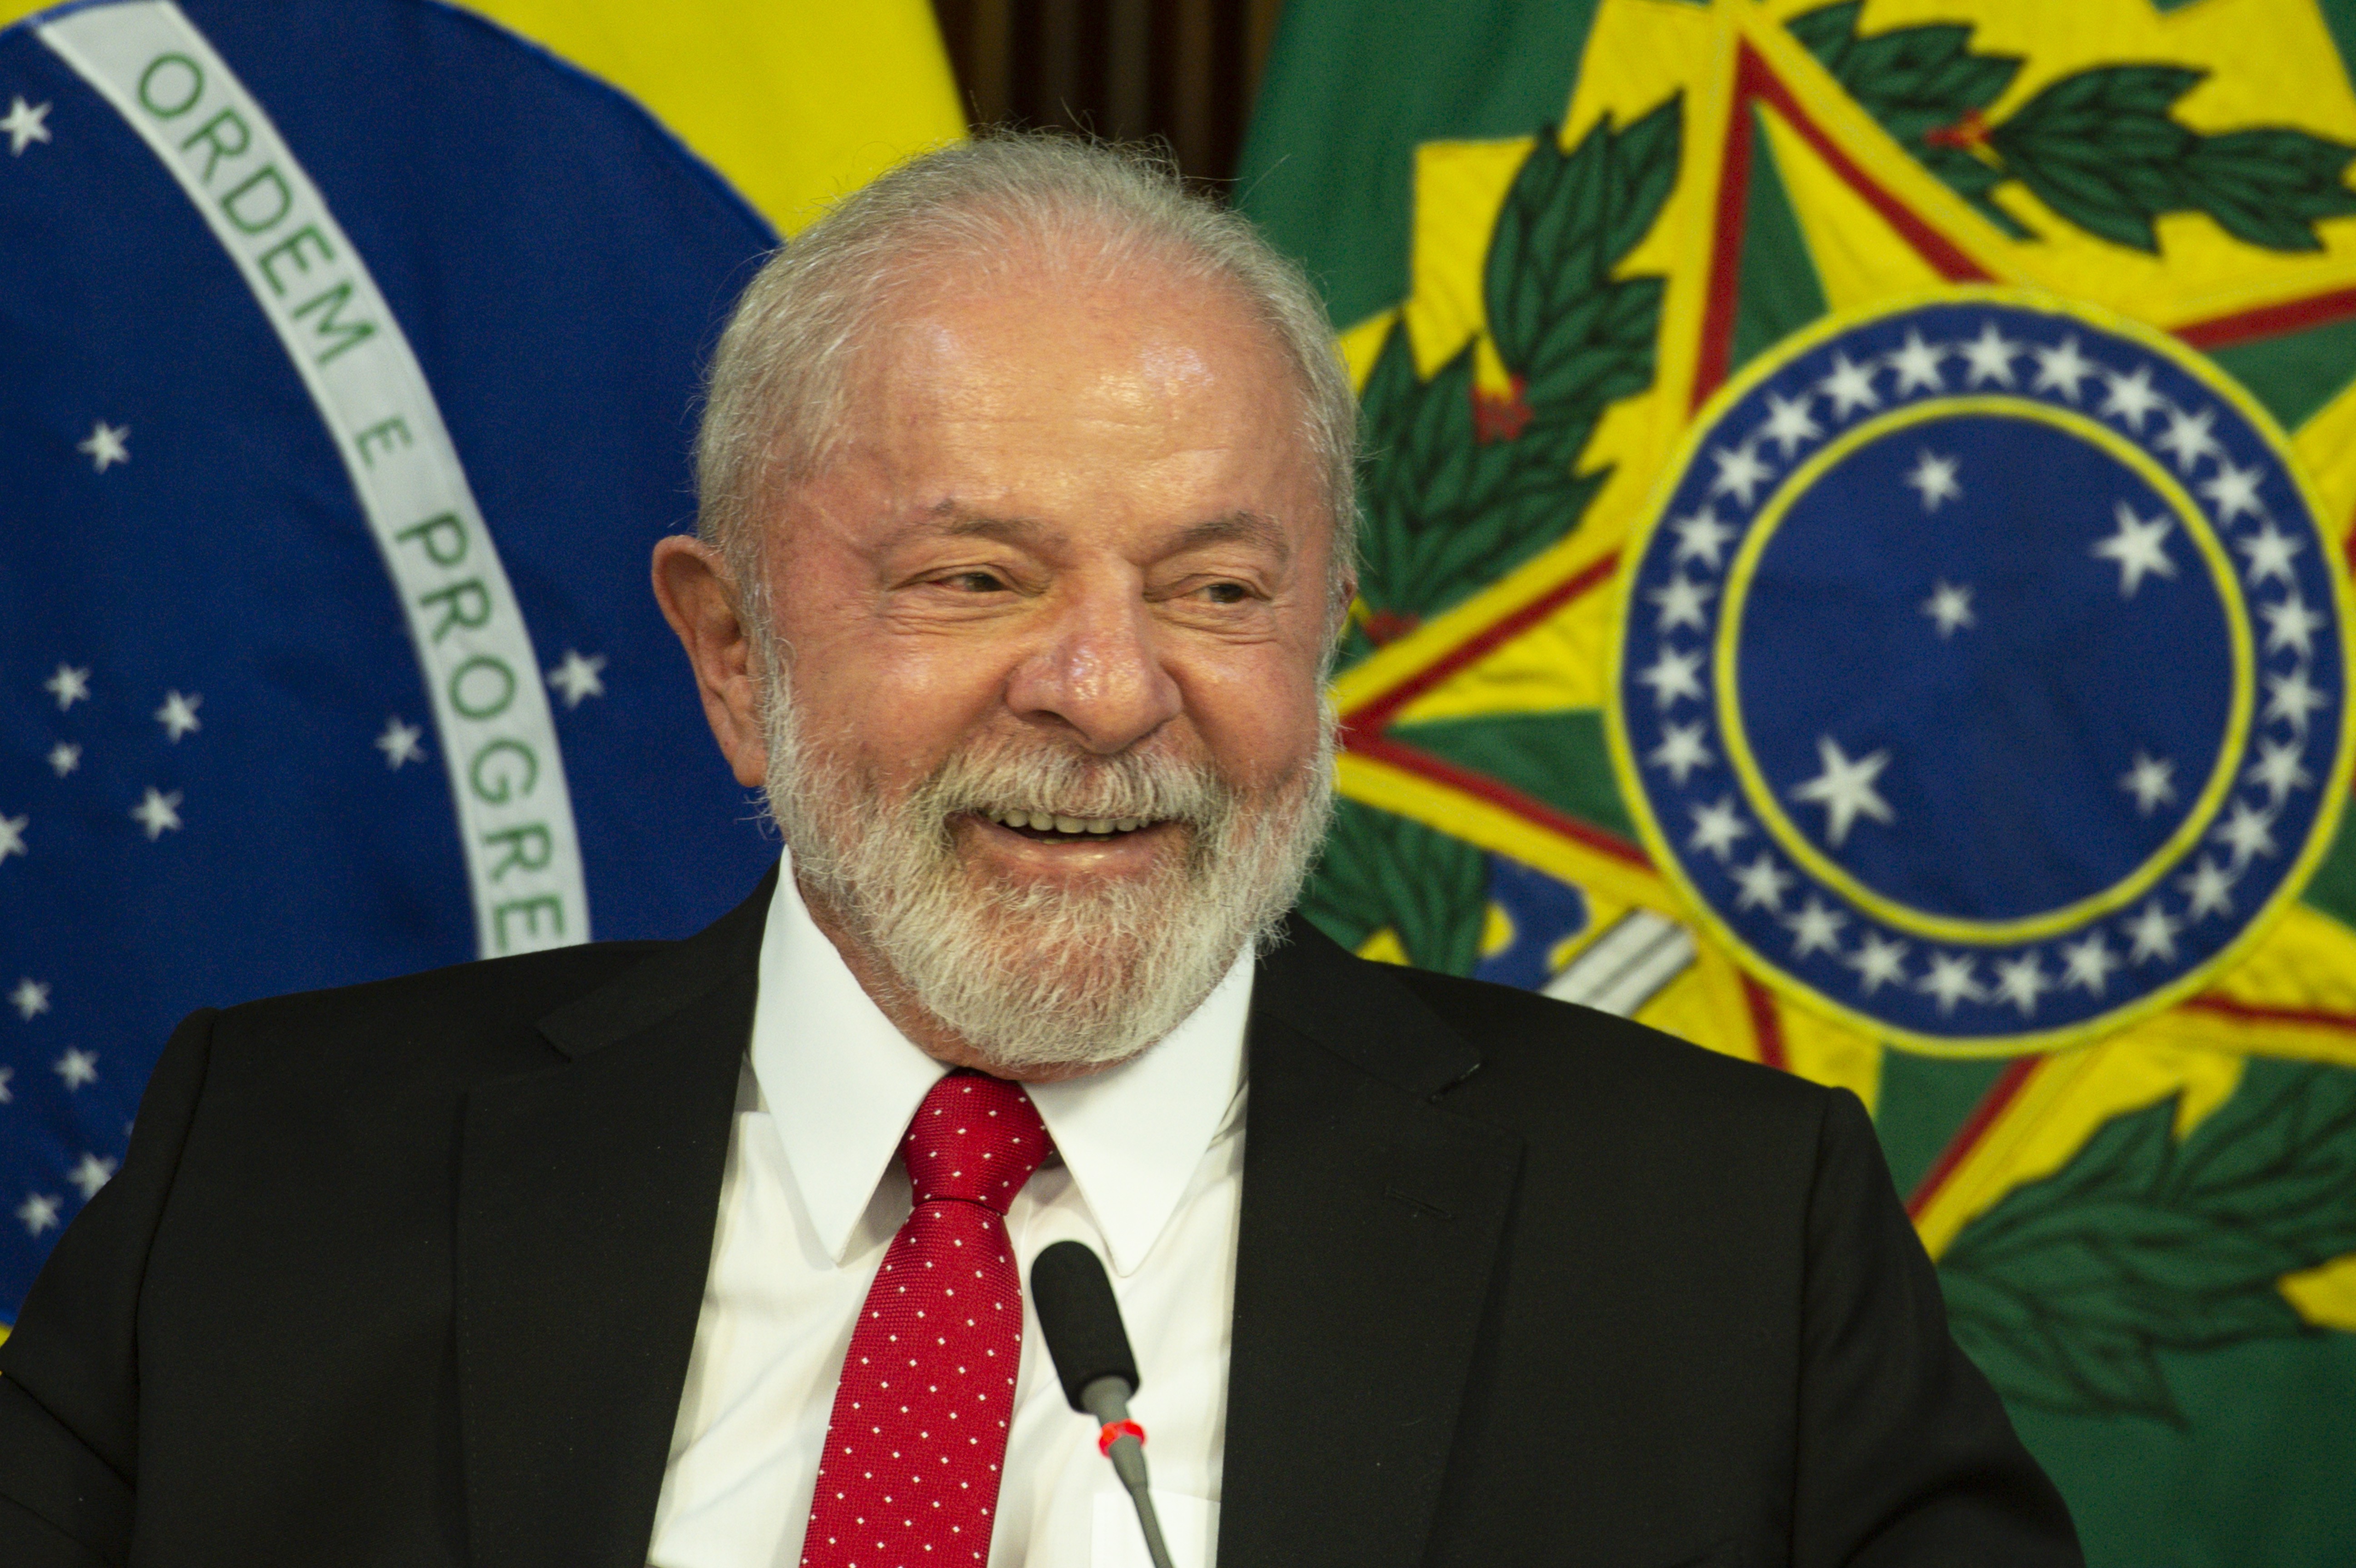 Lula se solidariza à vítimas de ataque em Blumenau – PT – DF